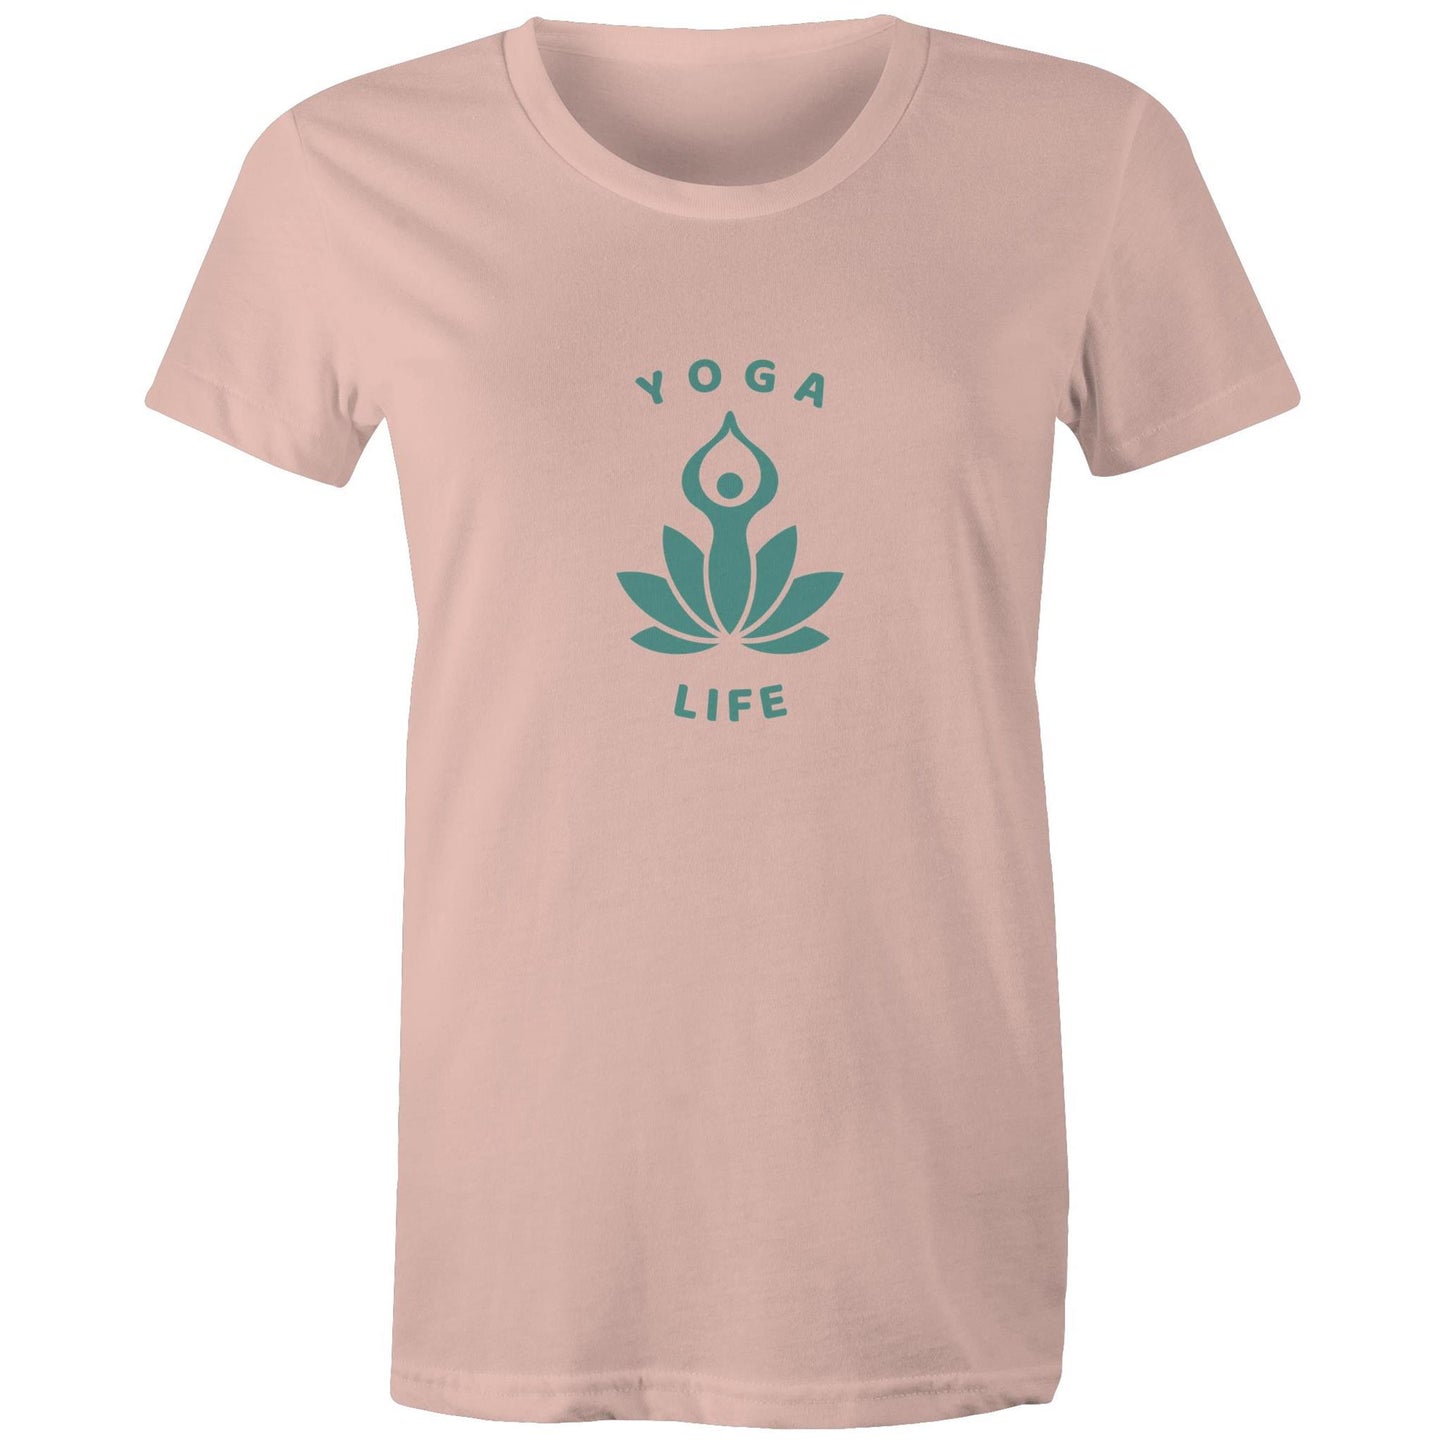 Yoga Life Womens TShirt